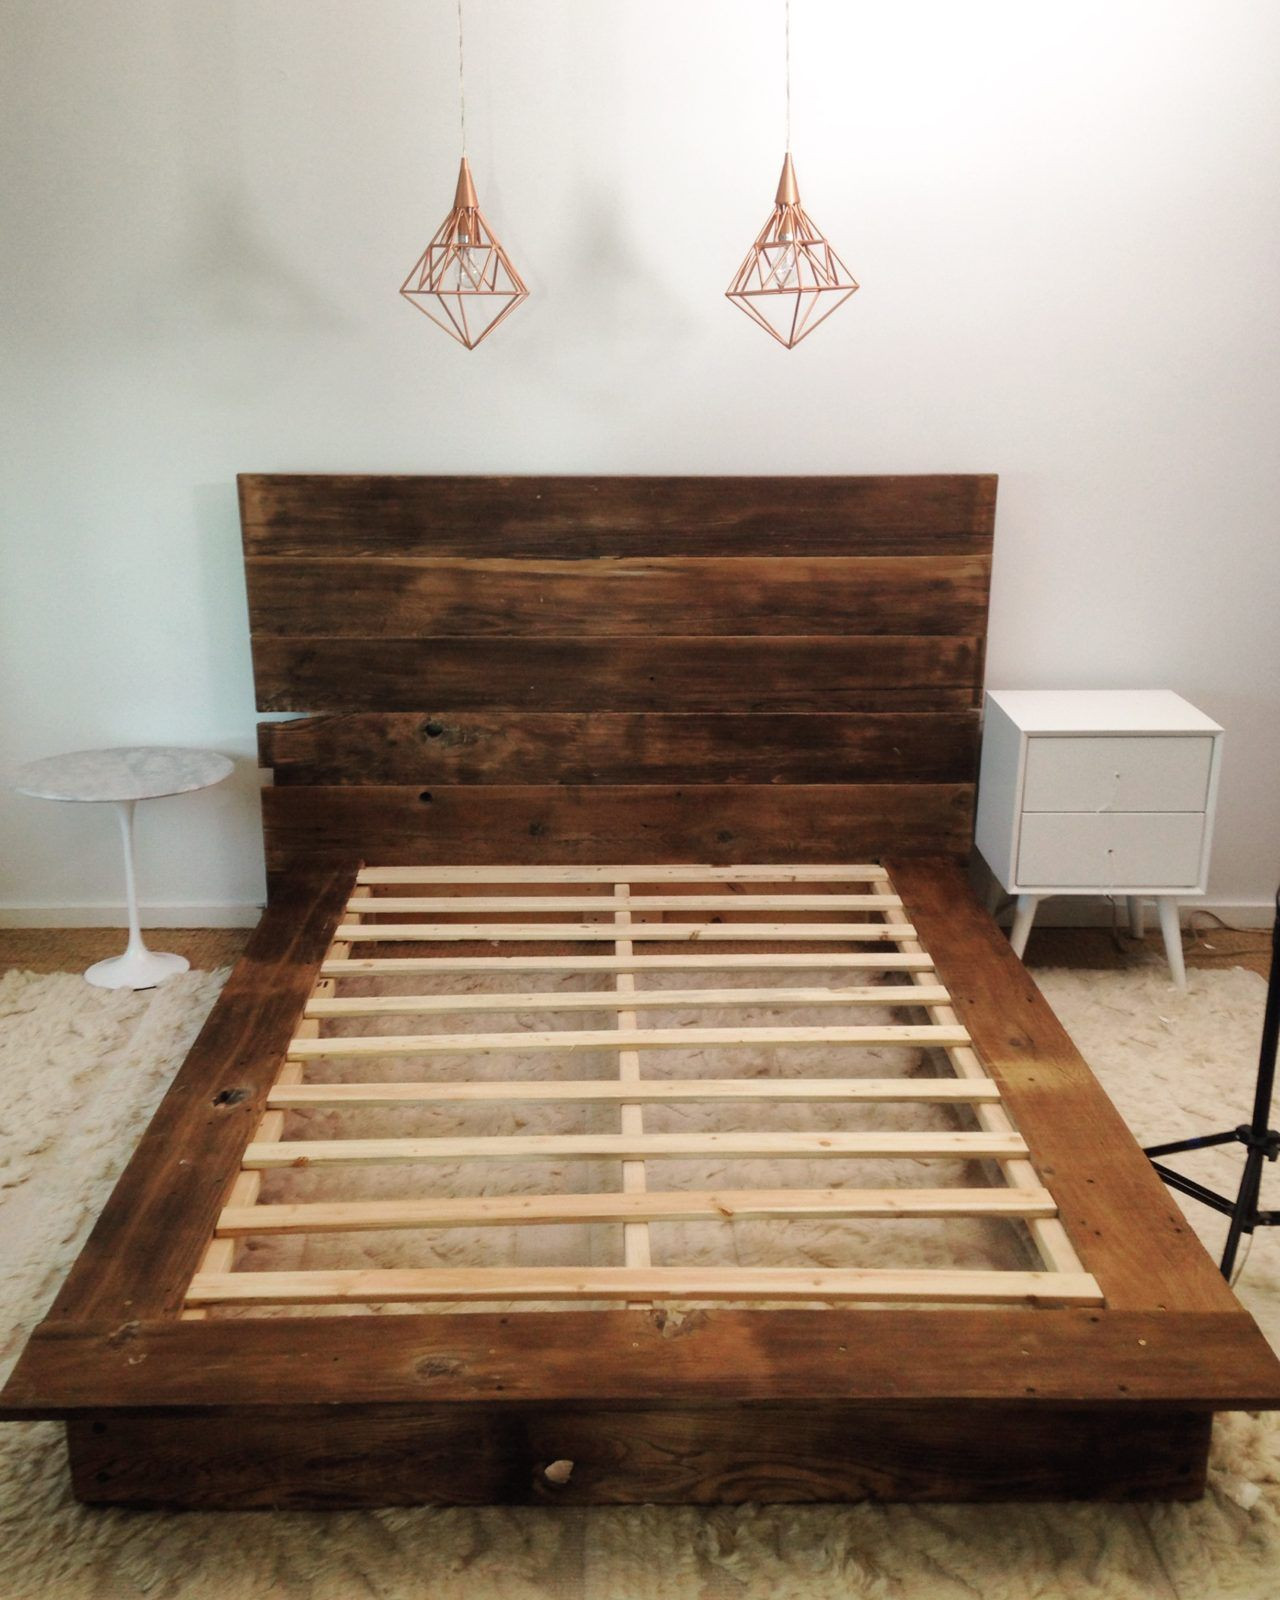 DIY Wood Bed Platform
 DIY Reclaimed Wood Platform Bed